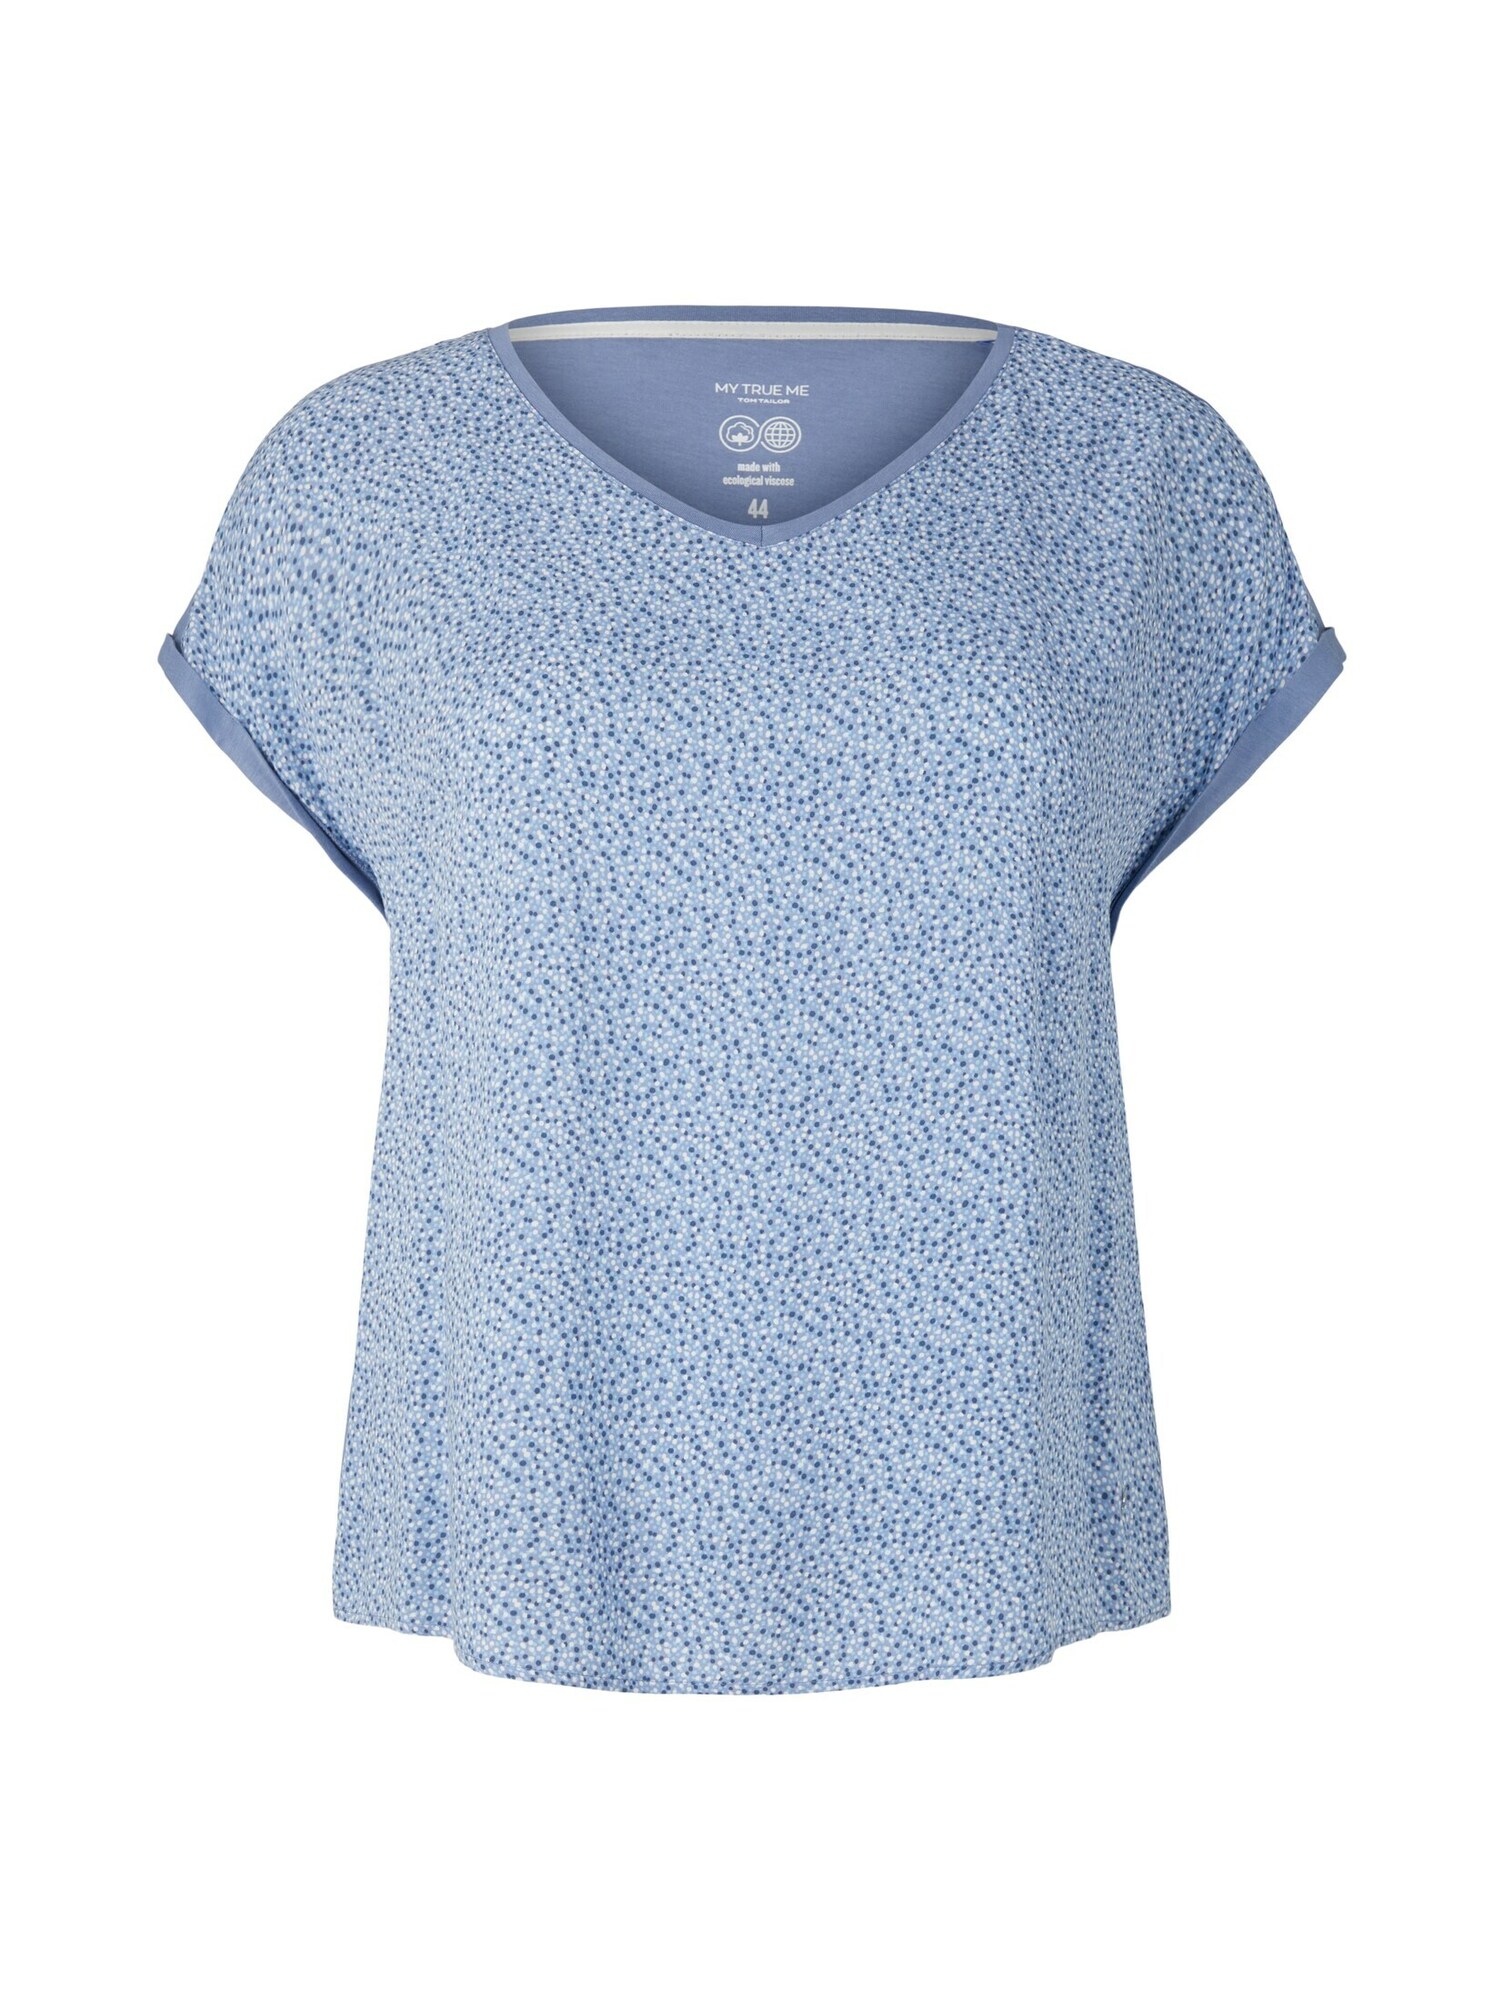 Tom Tailor Women + Marškinėliai mėlyna / tamsiai mėlyna jūros spalva / balta